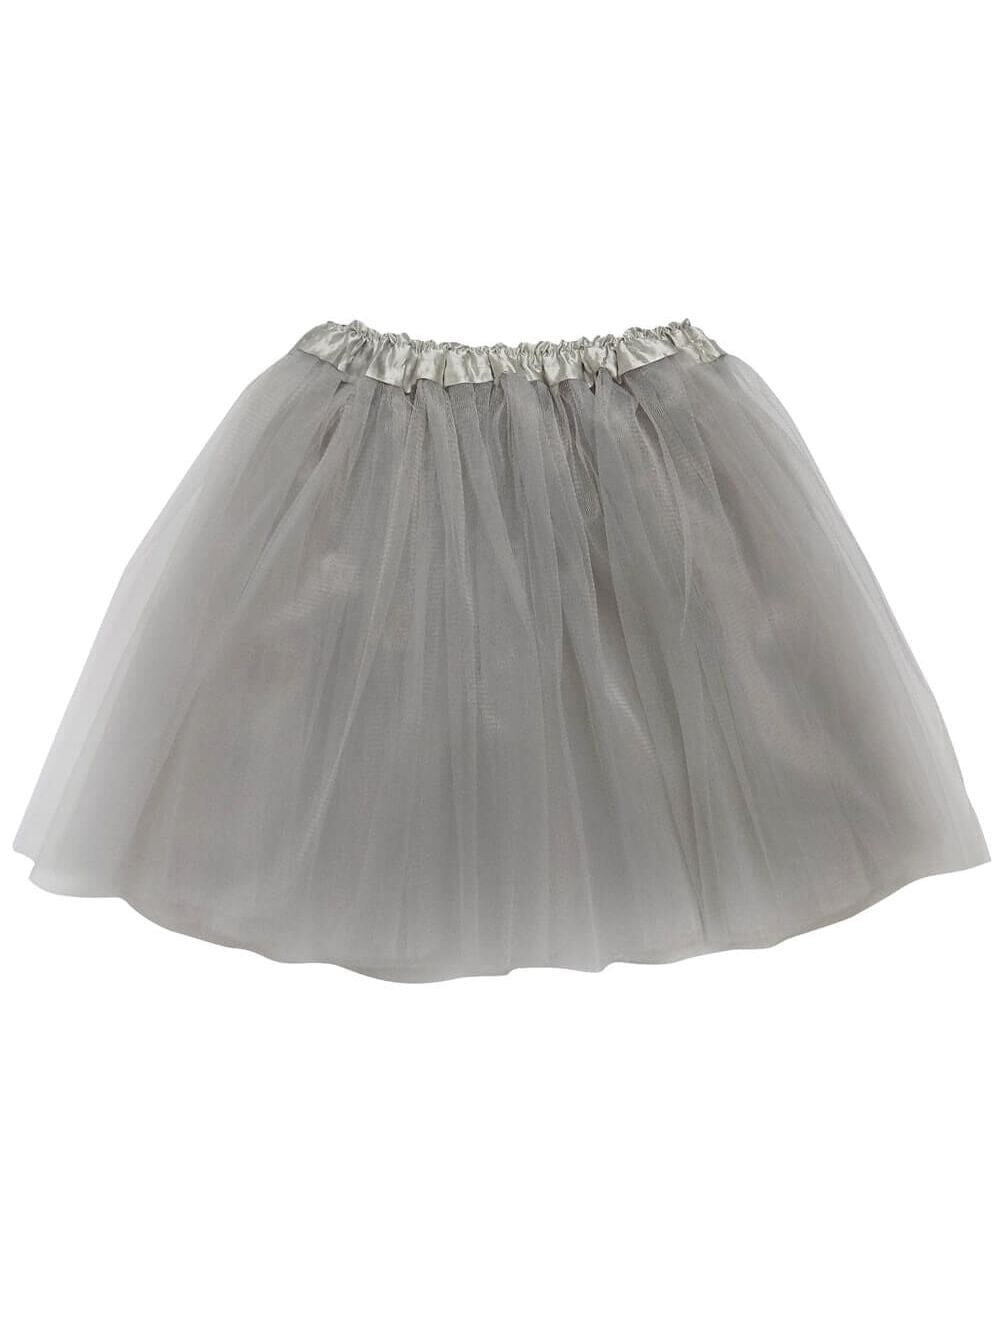 Silver Tutu Skirt for Adult - Women's Size 3-Layer Basic Ballet Costume Dance Tutus - Sydney So Sweet